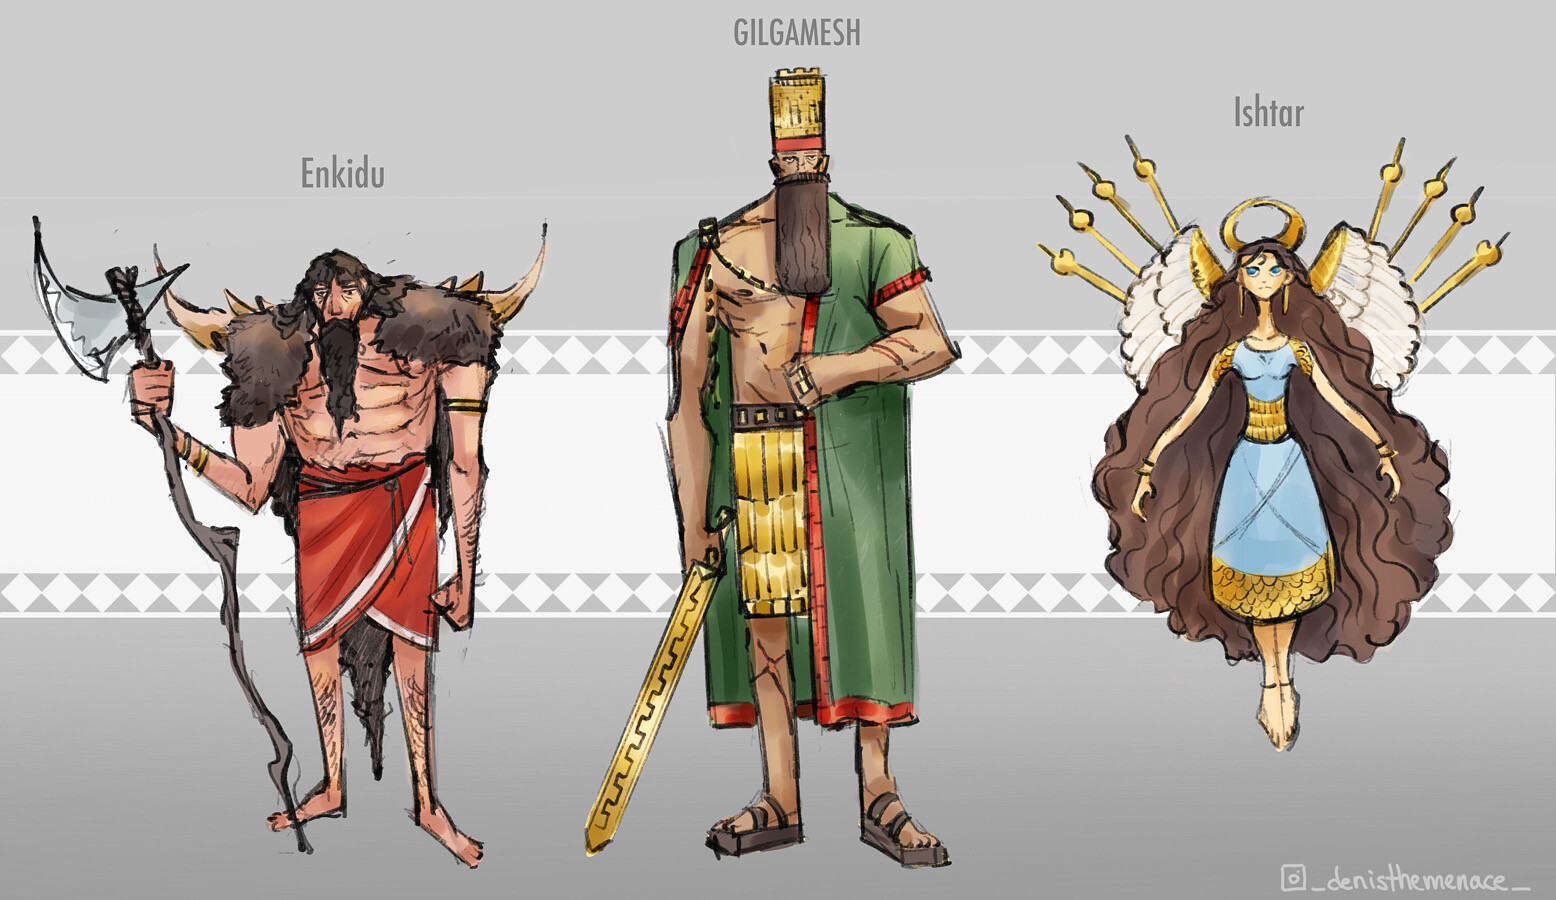 The Art of Denis Aurelian Mocanu - Epic of Gilgamesh - Character designs